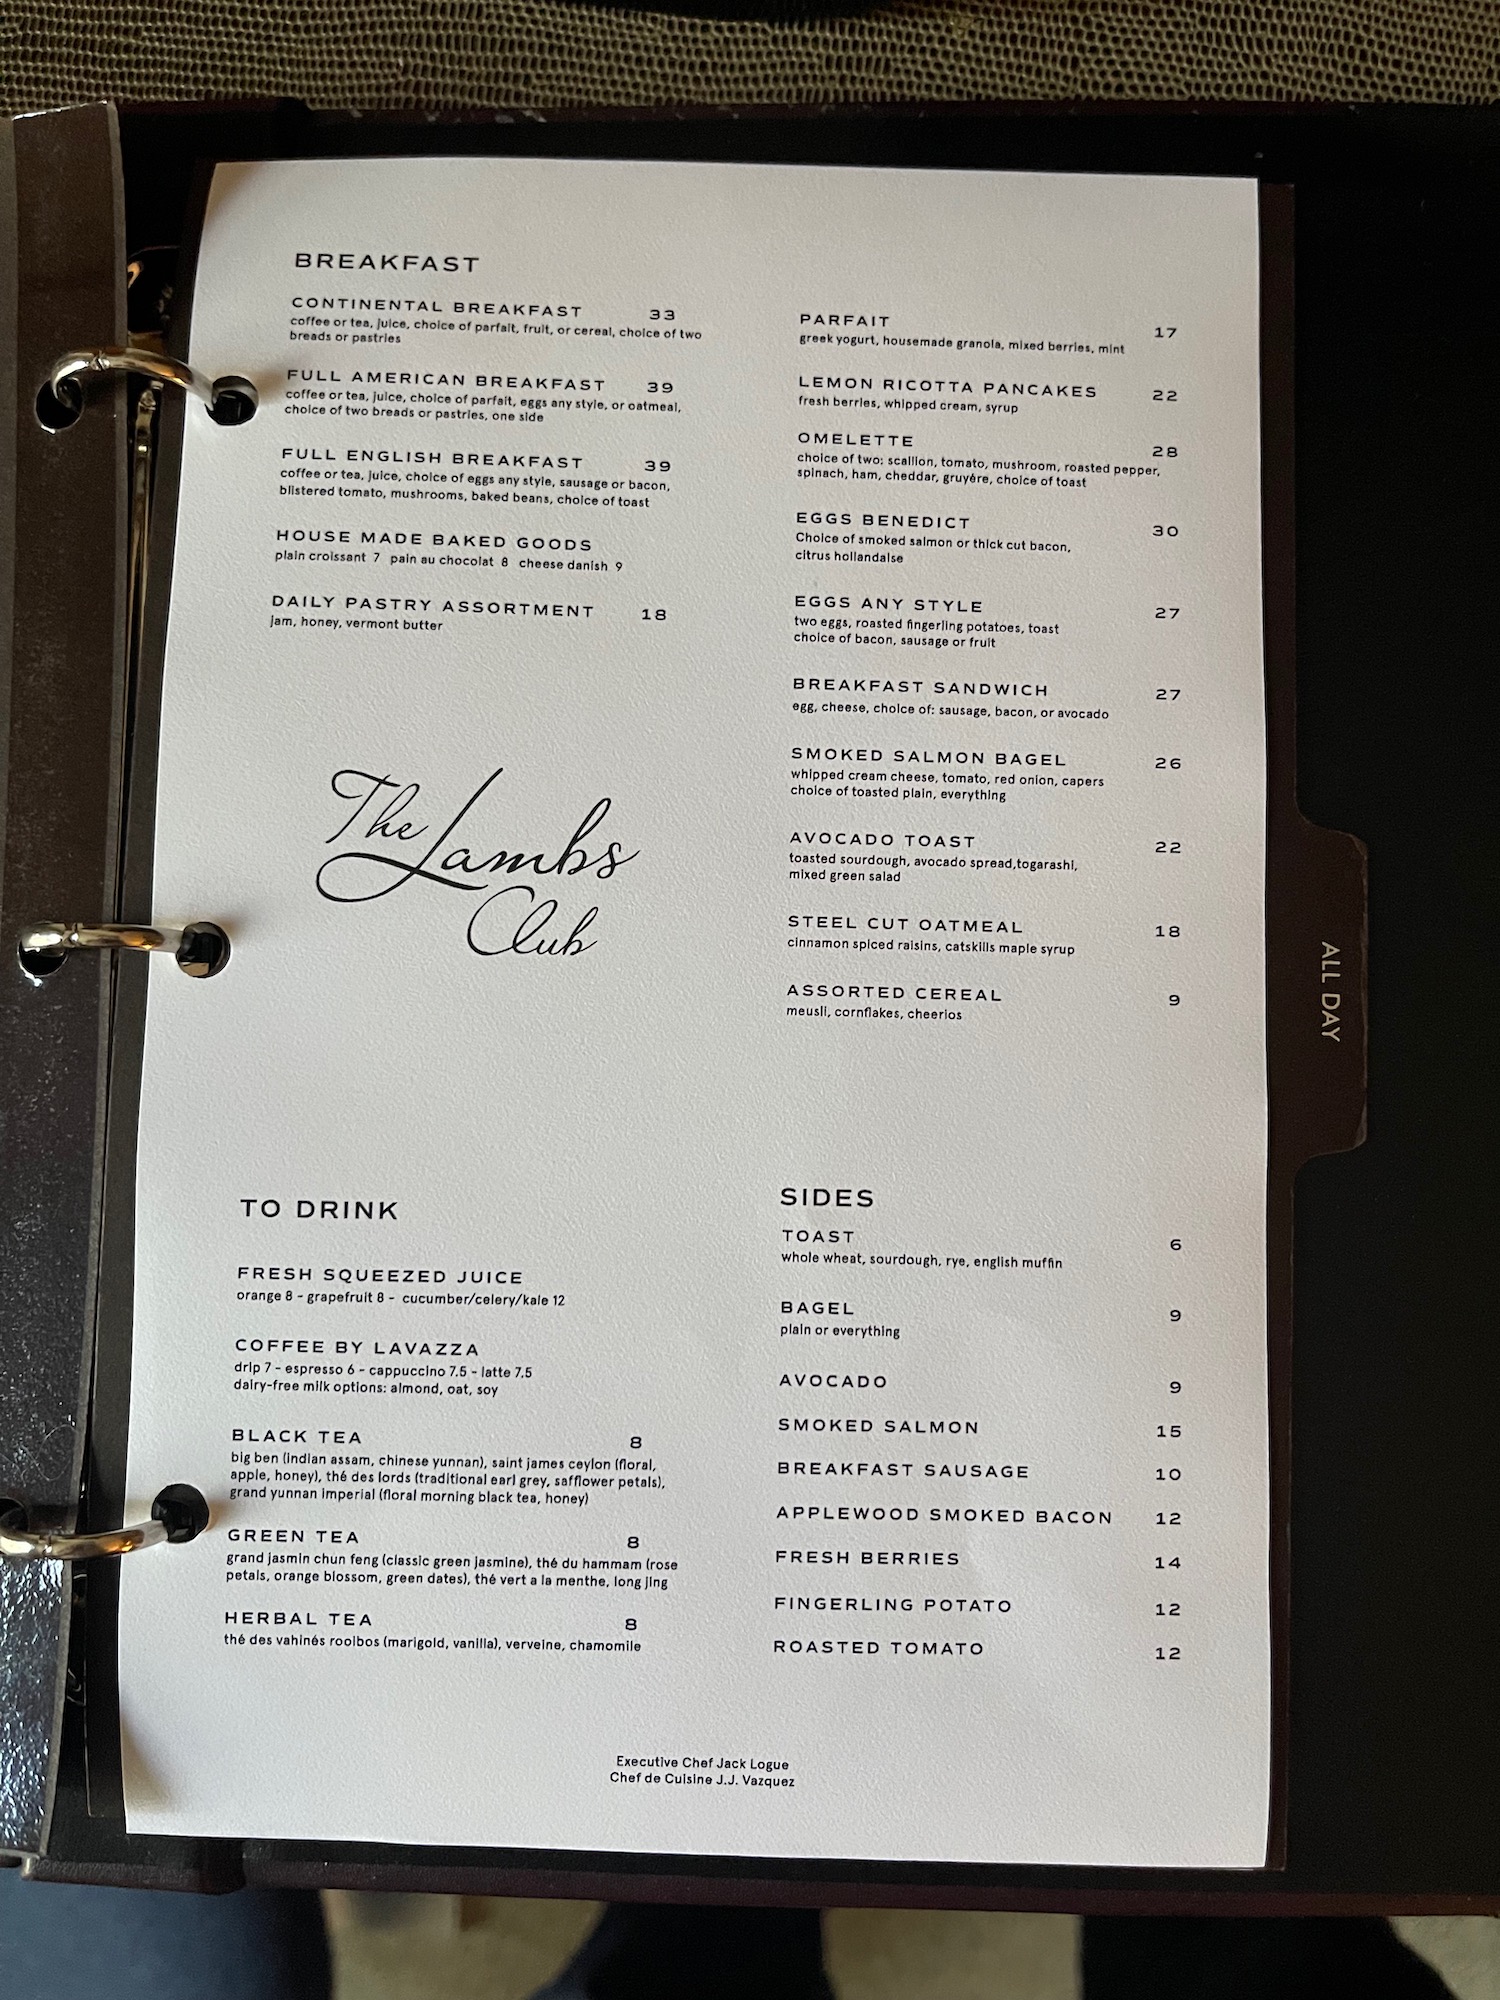 a menu in a binder